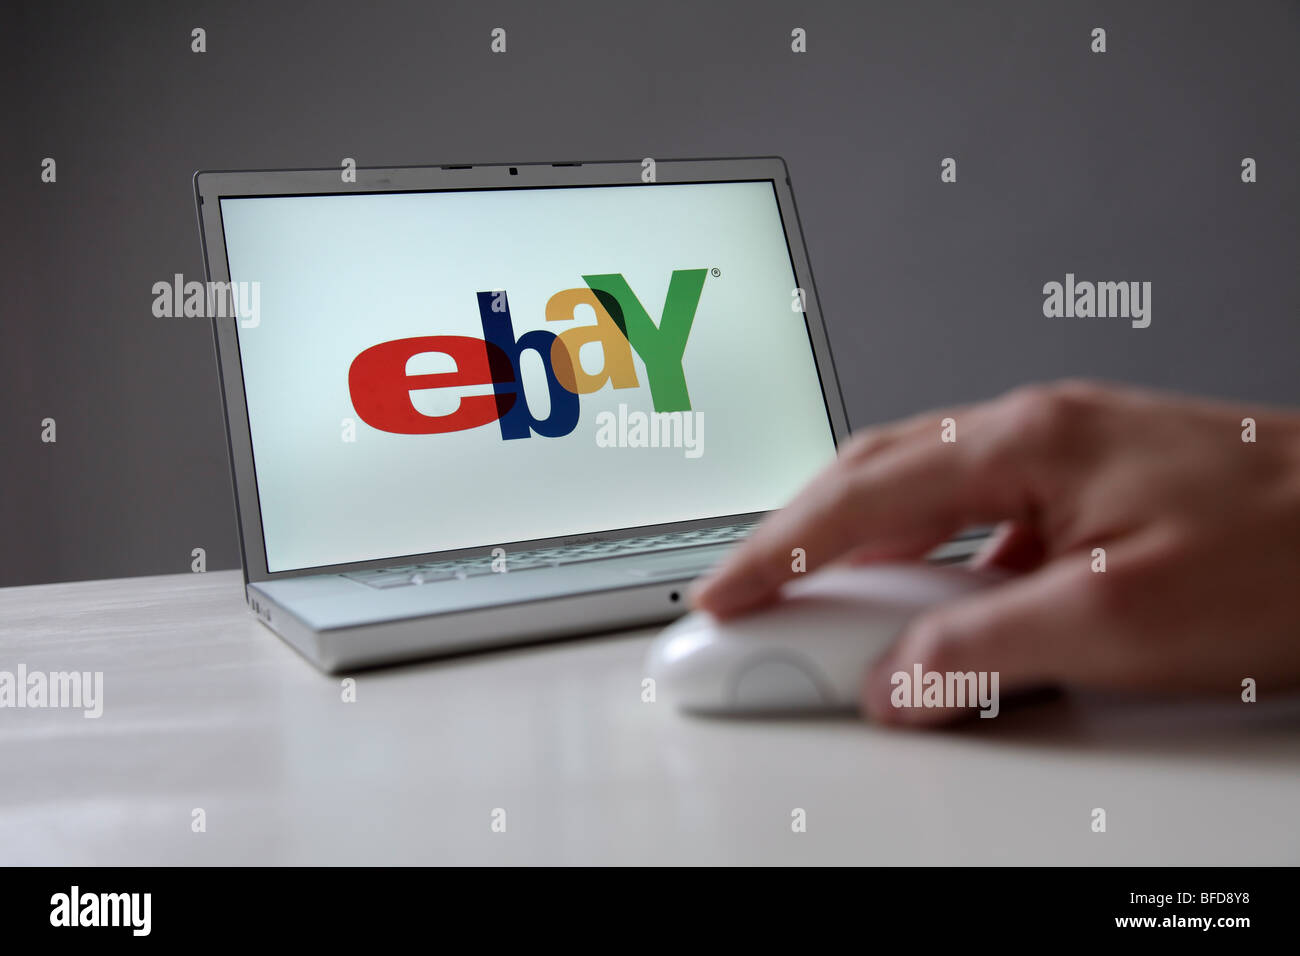 Logo de l'entreprise ebay sur l'écran d'ordinateur. Symbole : de l'utilisation de l'enchère en ligne ebay Banque D'Images